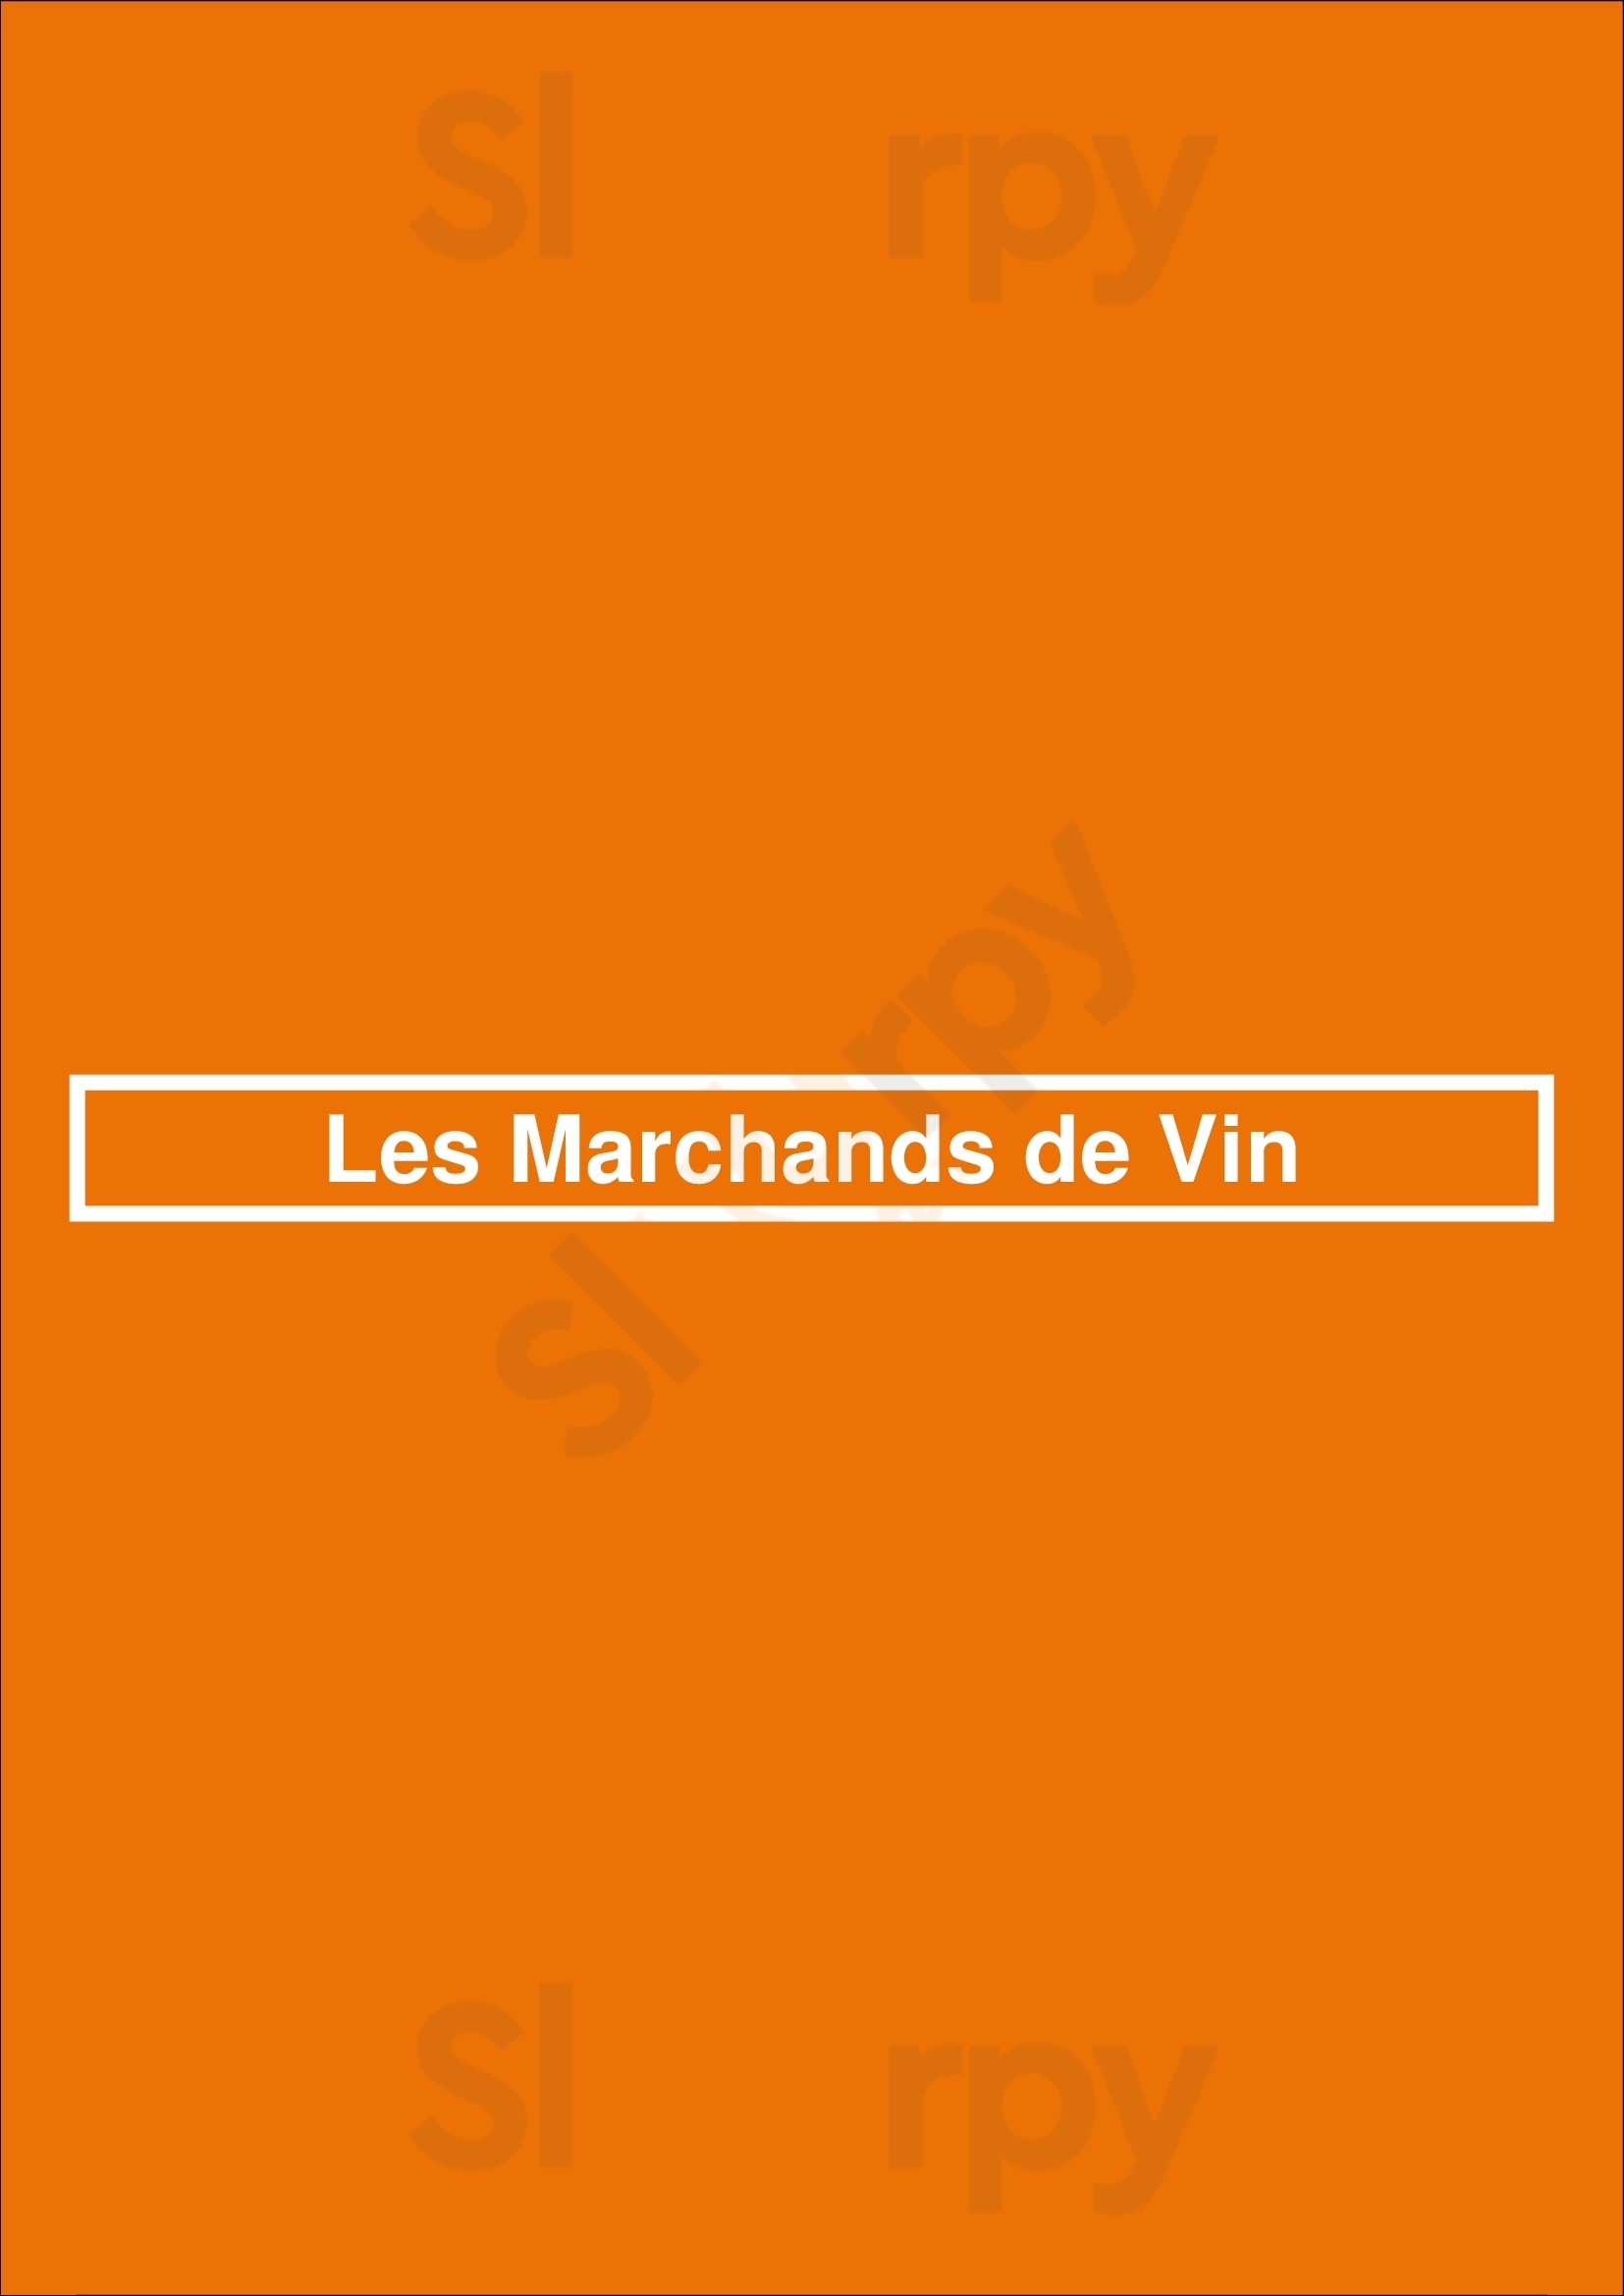 Les Marchands De Vin Paris Menu - 1